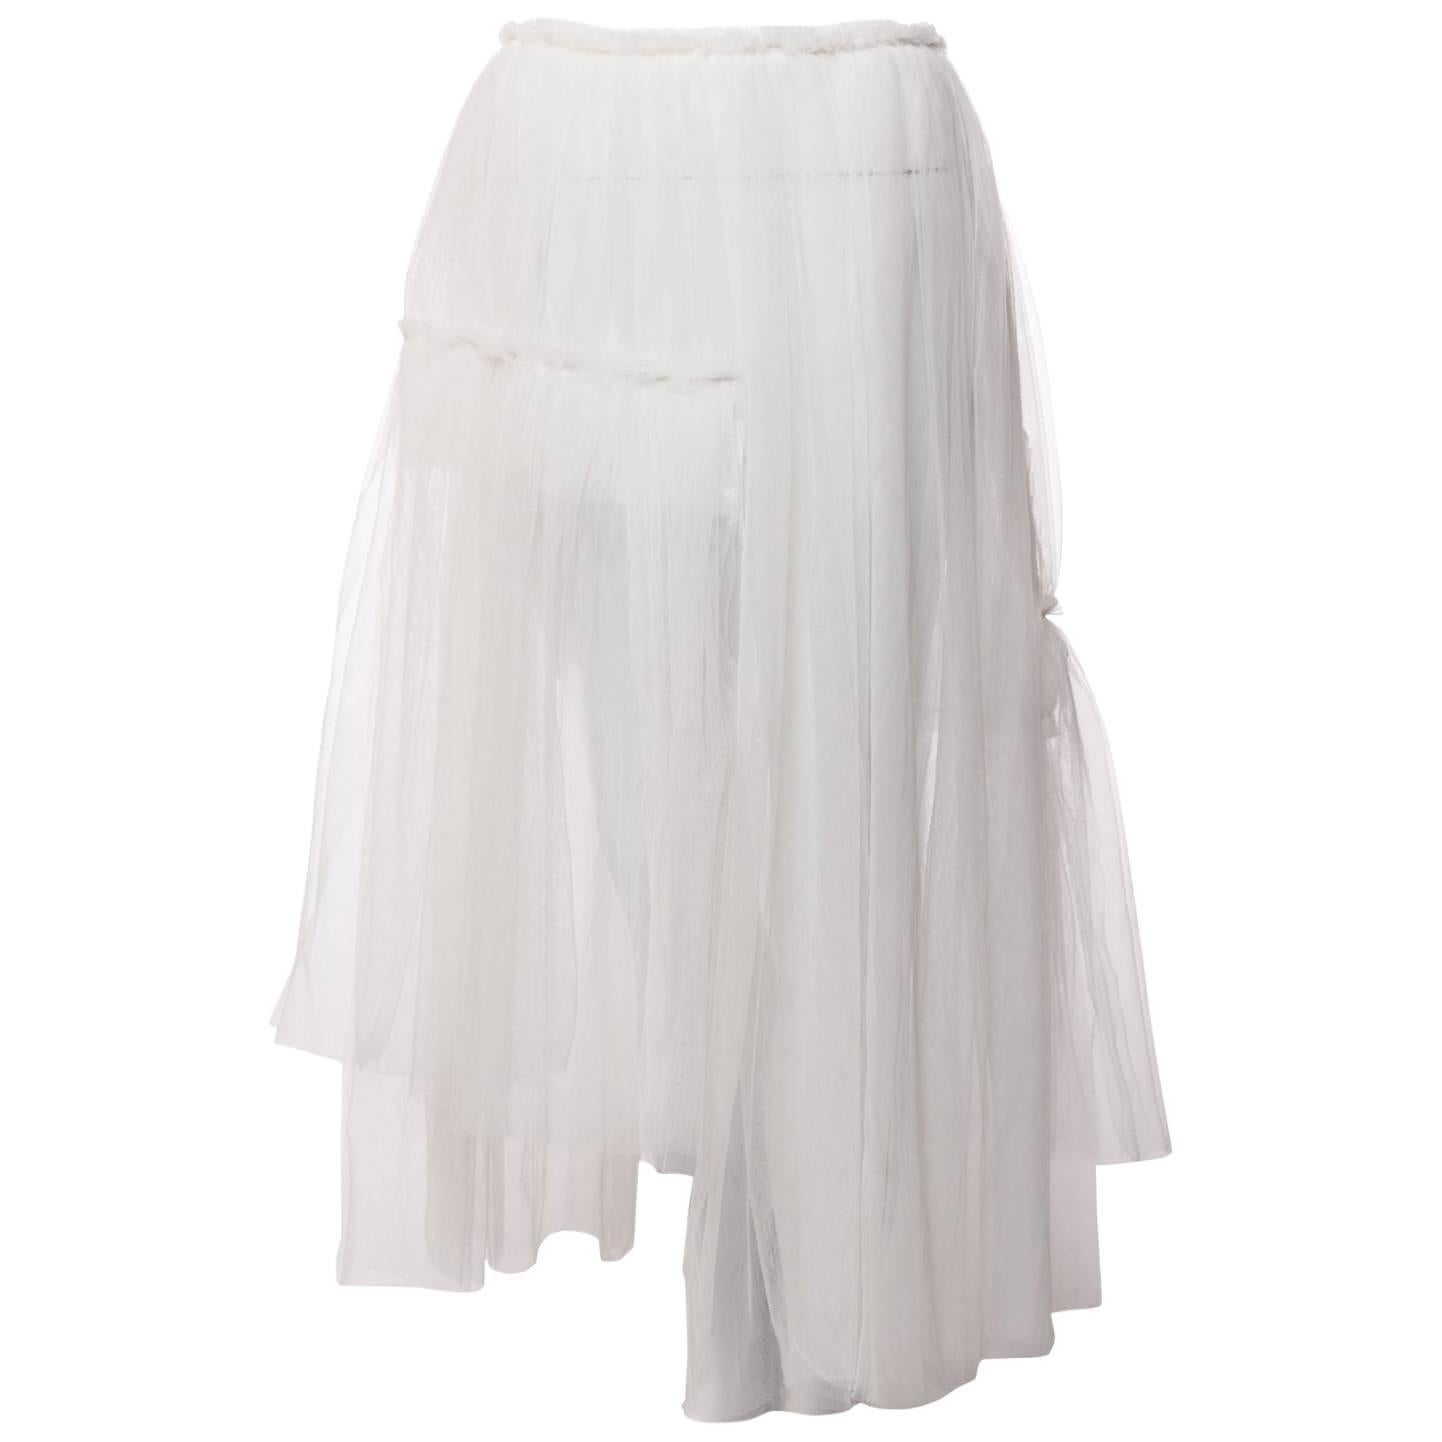 2007 Rei Kawakubo Comme des Garçons White Layered Tulle Skirt